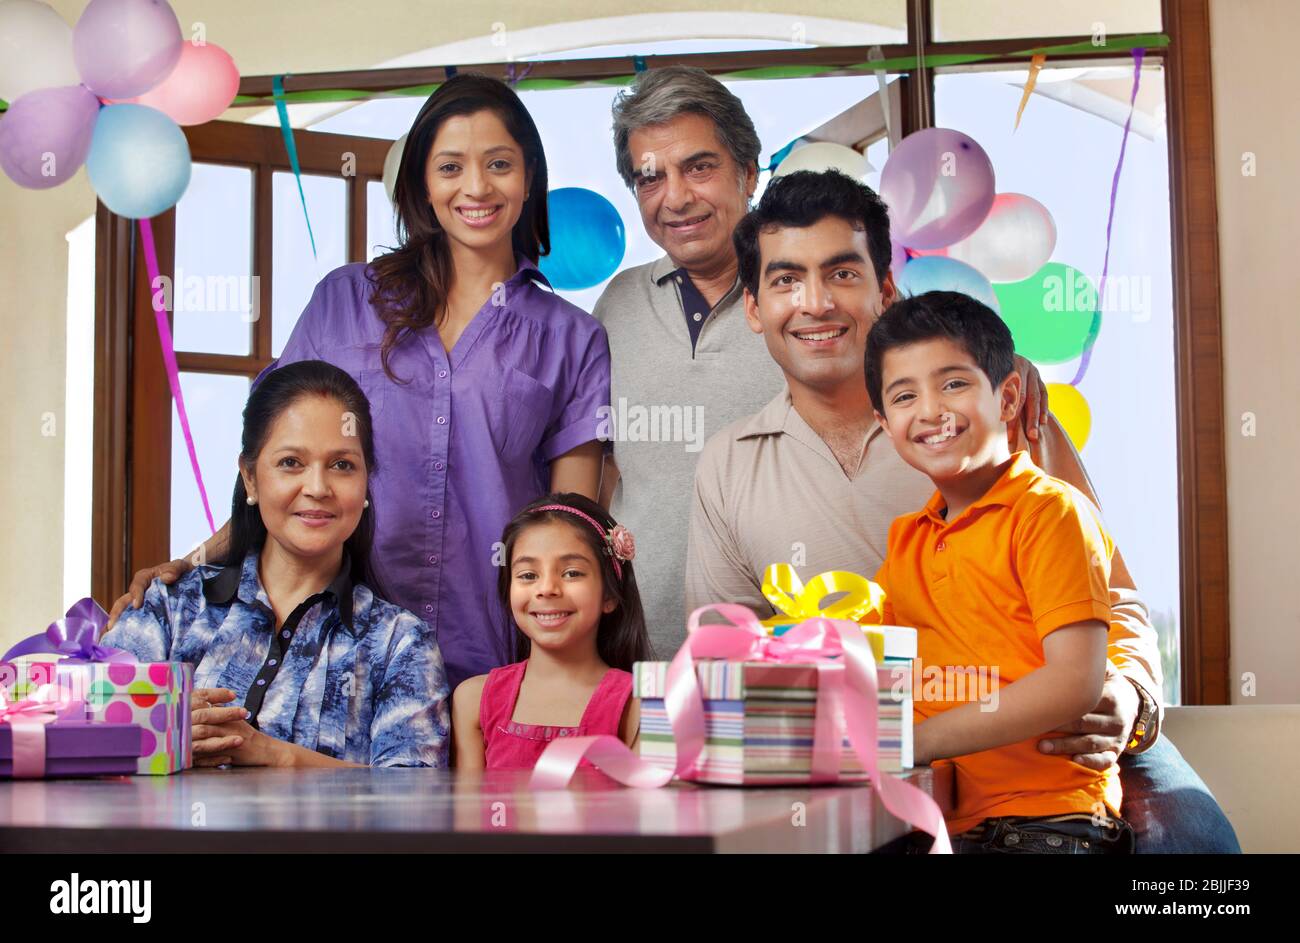 Porträt einer Familie bei einer Geburtstagsparty Stockfoto